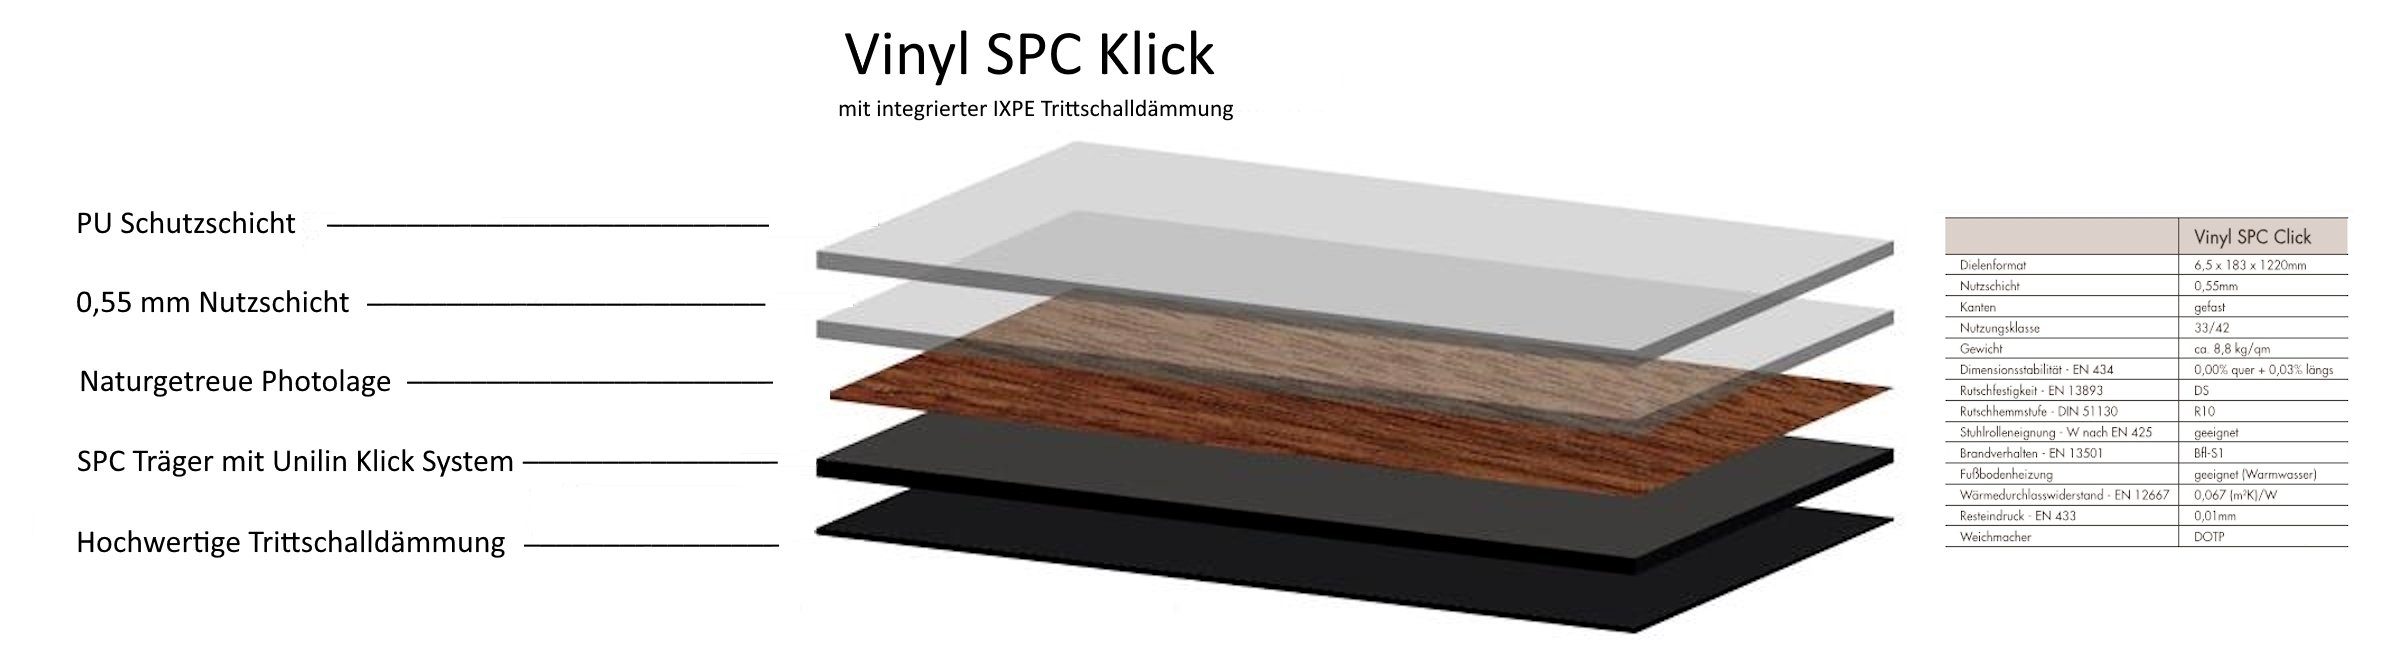 XXVinyl Vinylboden Klick Vinylplanke mit 10 m², Eiche 6,5 Stück, multibraun 2,233 mm, wunderschöne Holzdekore Trittschalldämmung